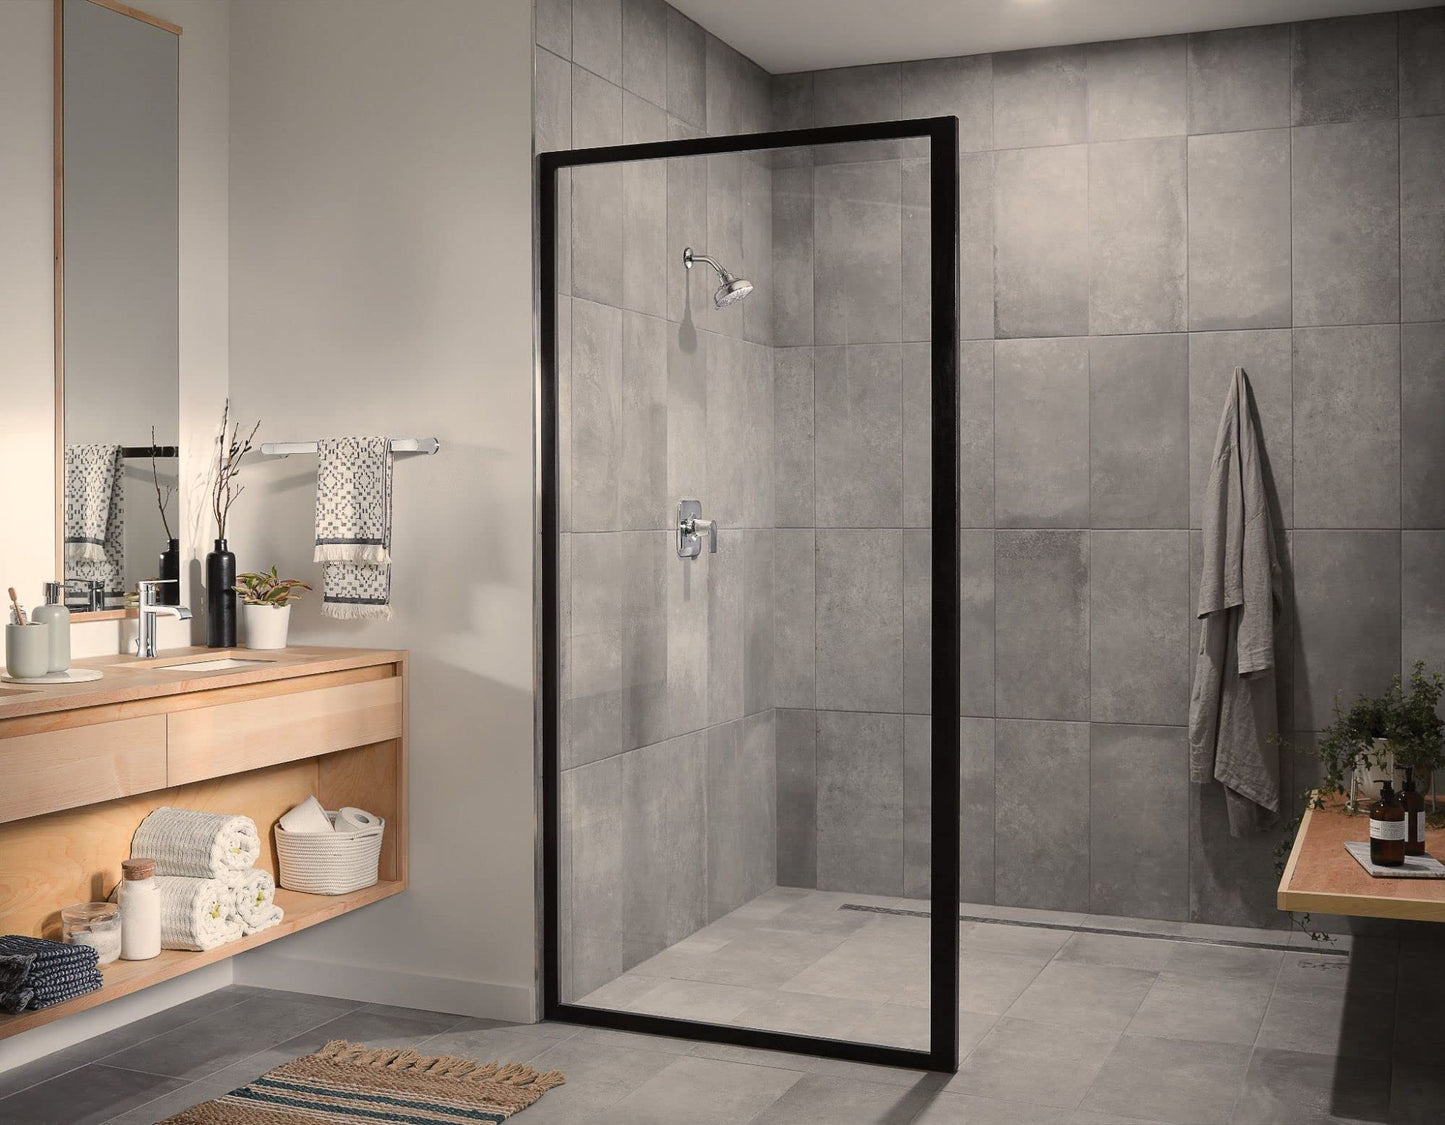 Moen Genta LX Chrome Modern 18-Inch Single Kitchen or Bathroom Towel Bar, BH3818CH